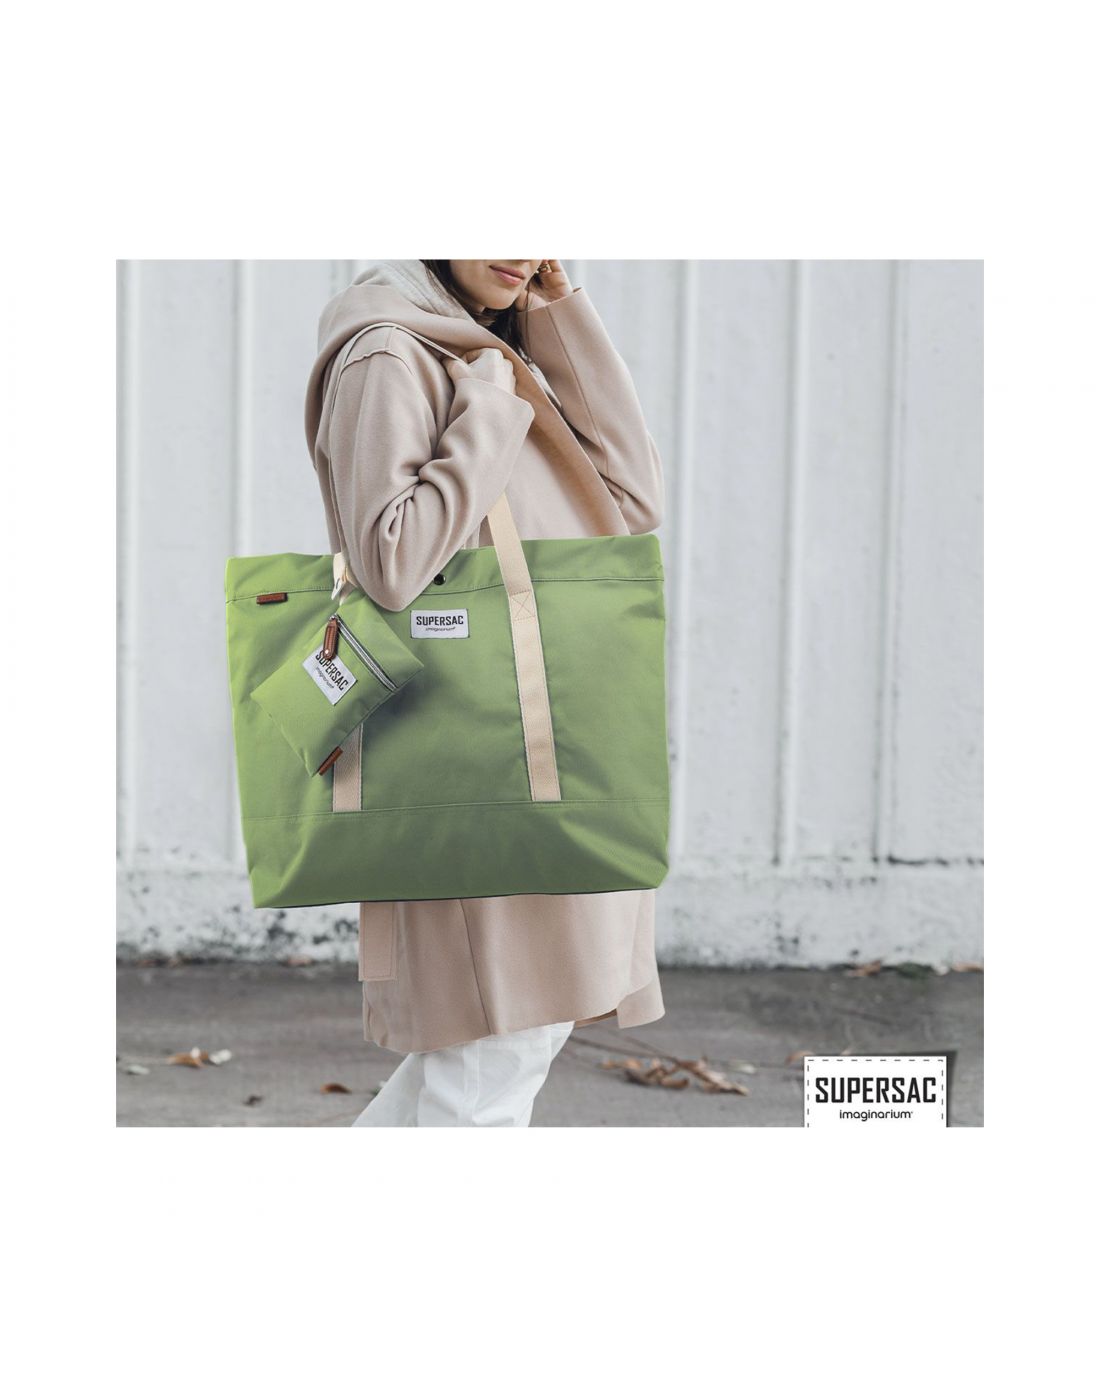 Imagianrium Tote Bag Supersac Green